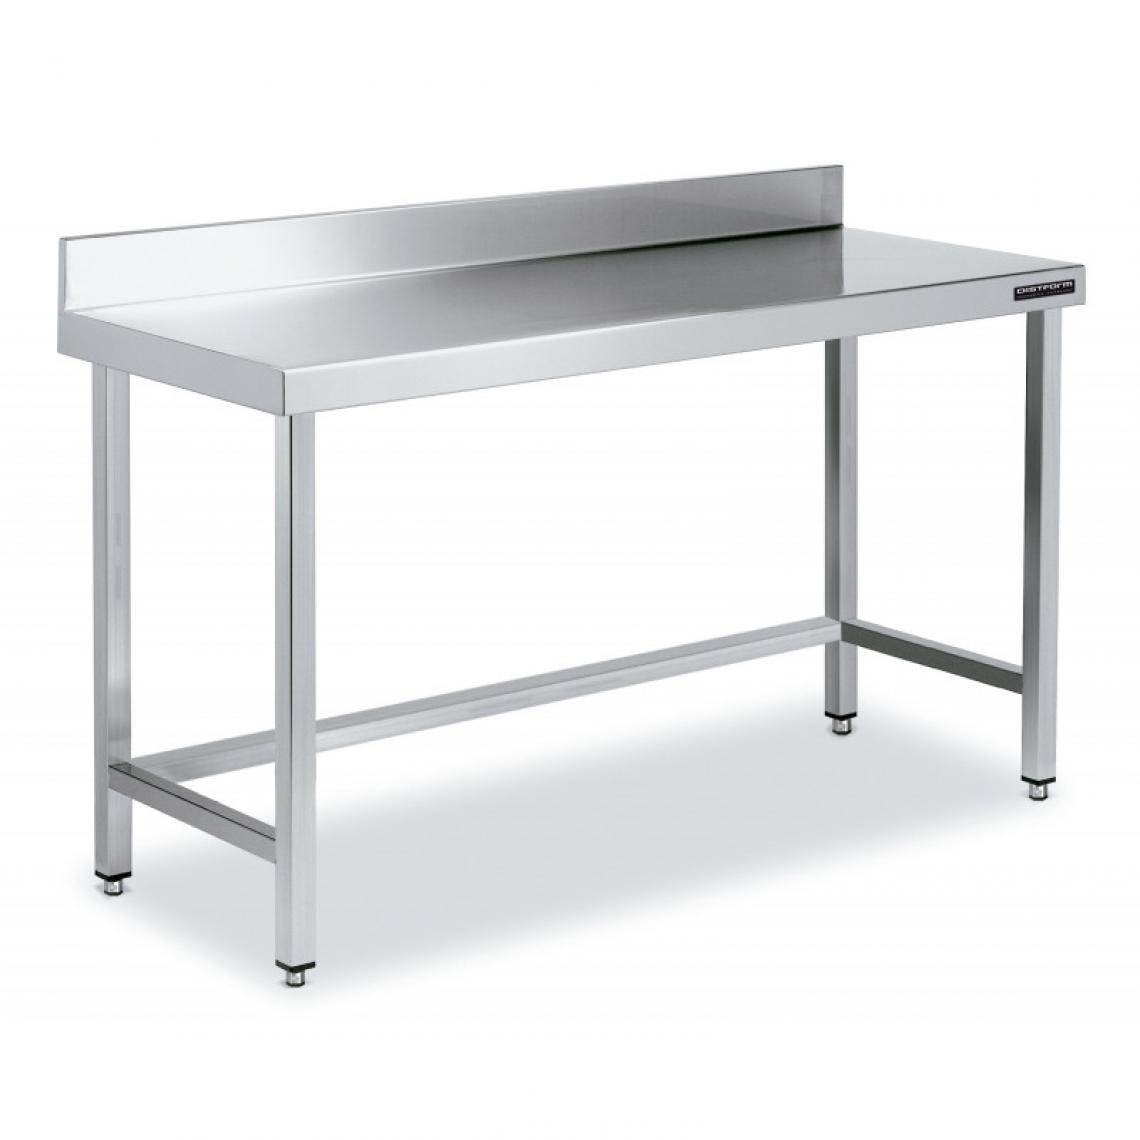 DISTFORM - Table de Travail Adossée Inox avec Renforts - Gamme 600 - Hauteur 600 - Distform - Acier inoxydable1900x600 - Tables à manger